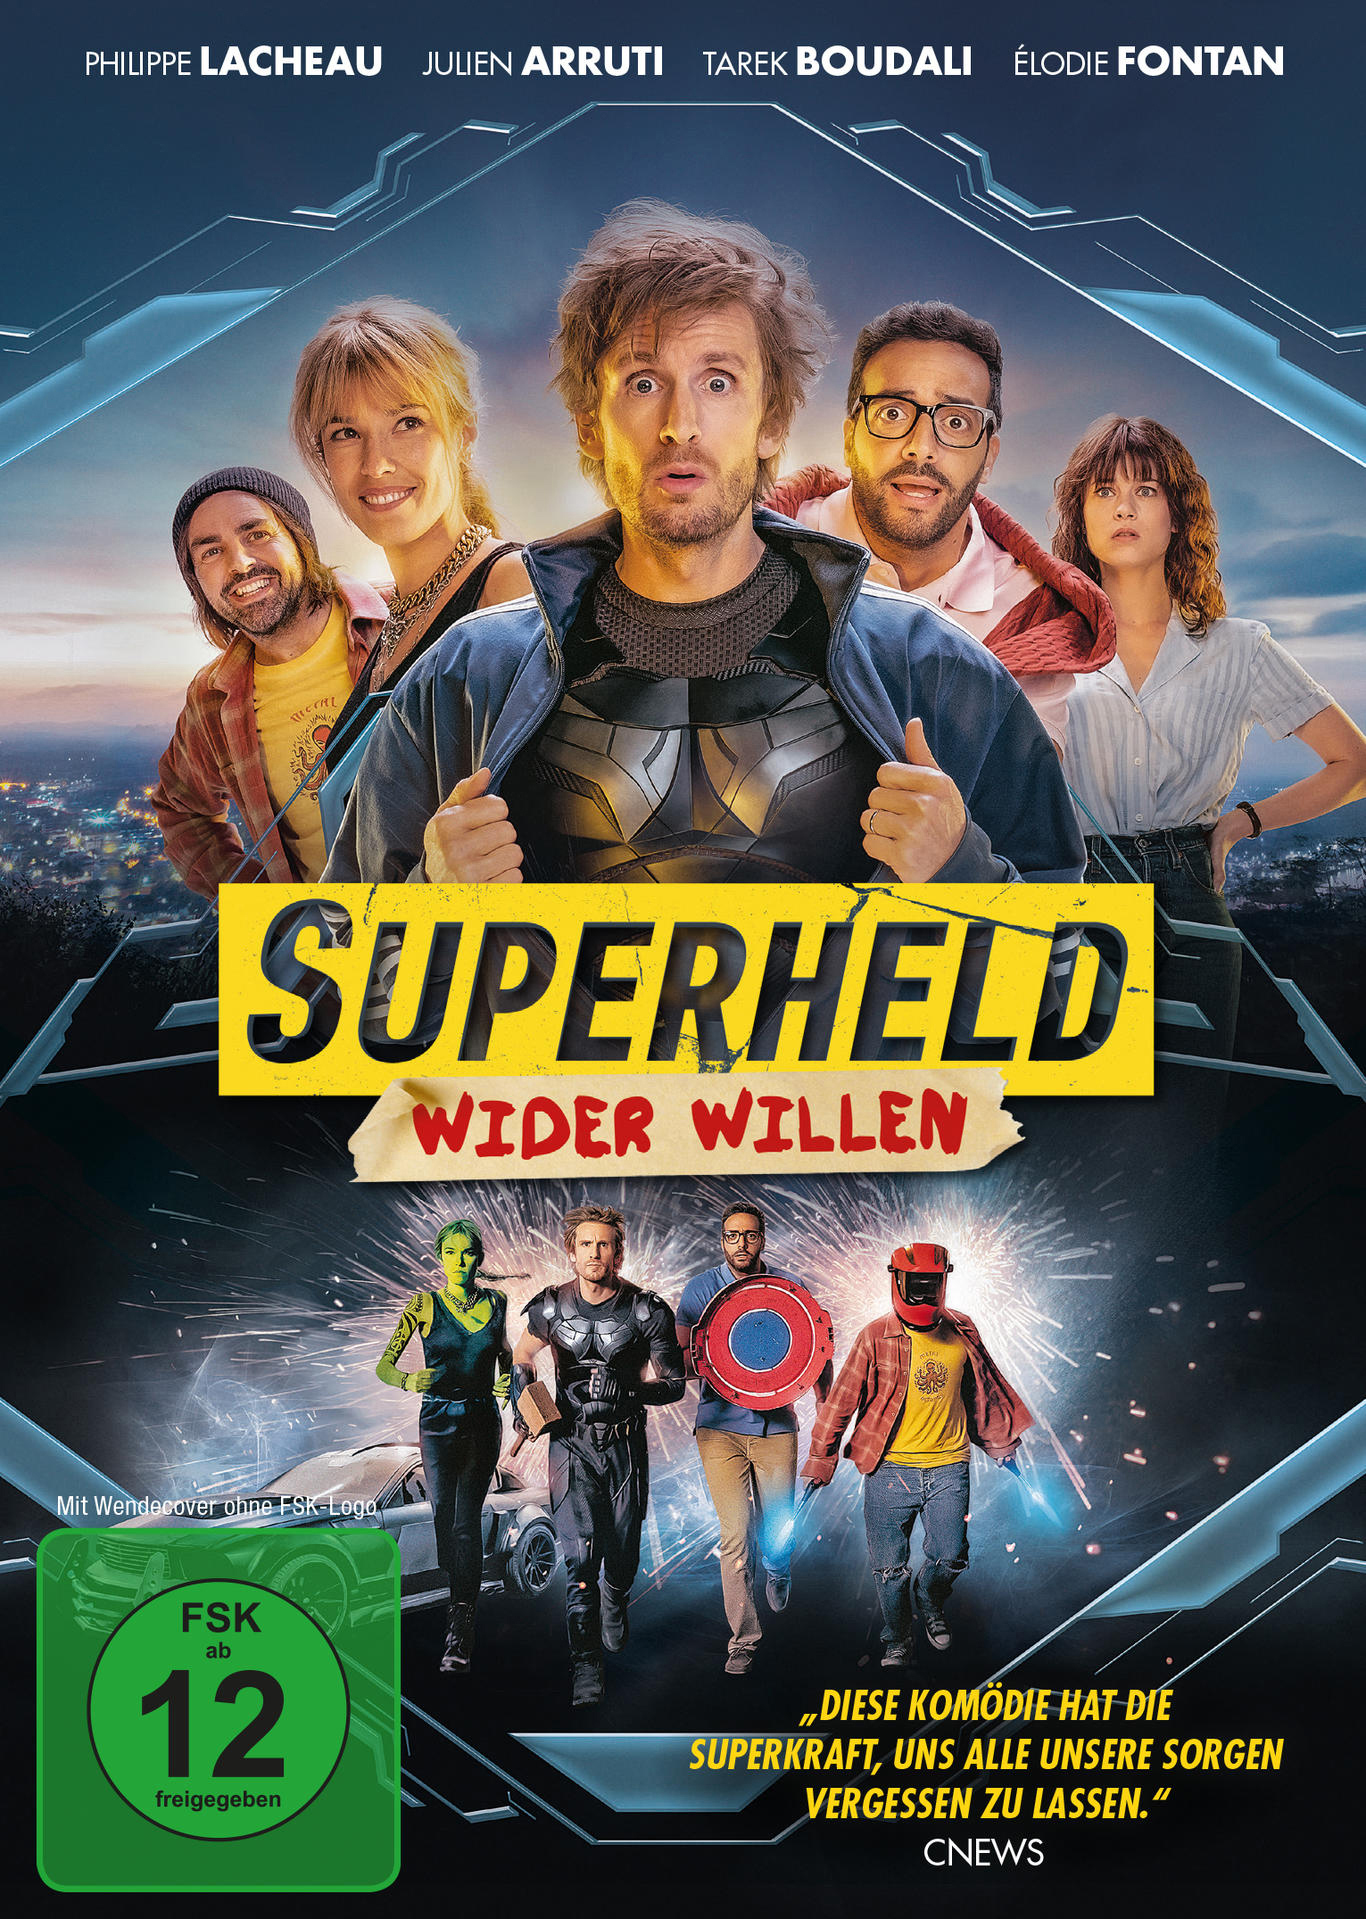 Wider DVD Superheld Willen